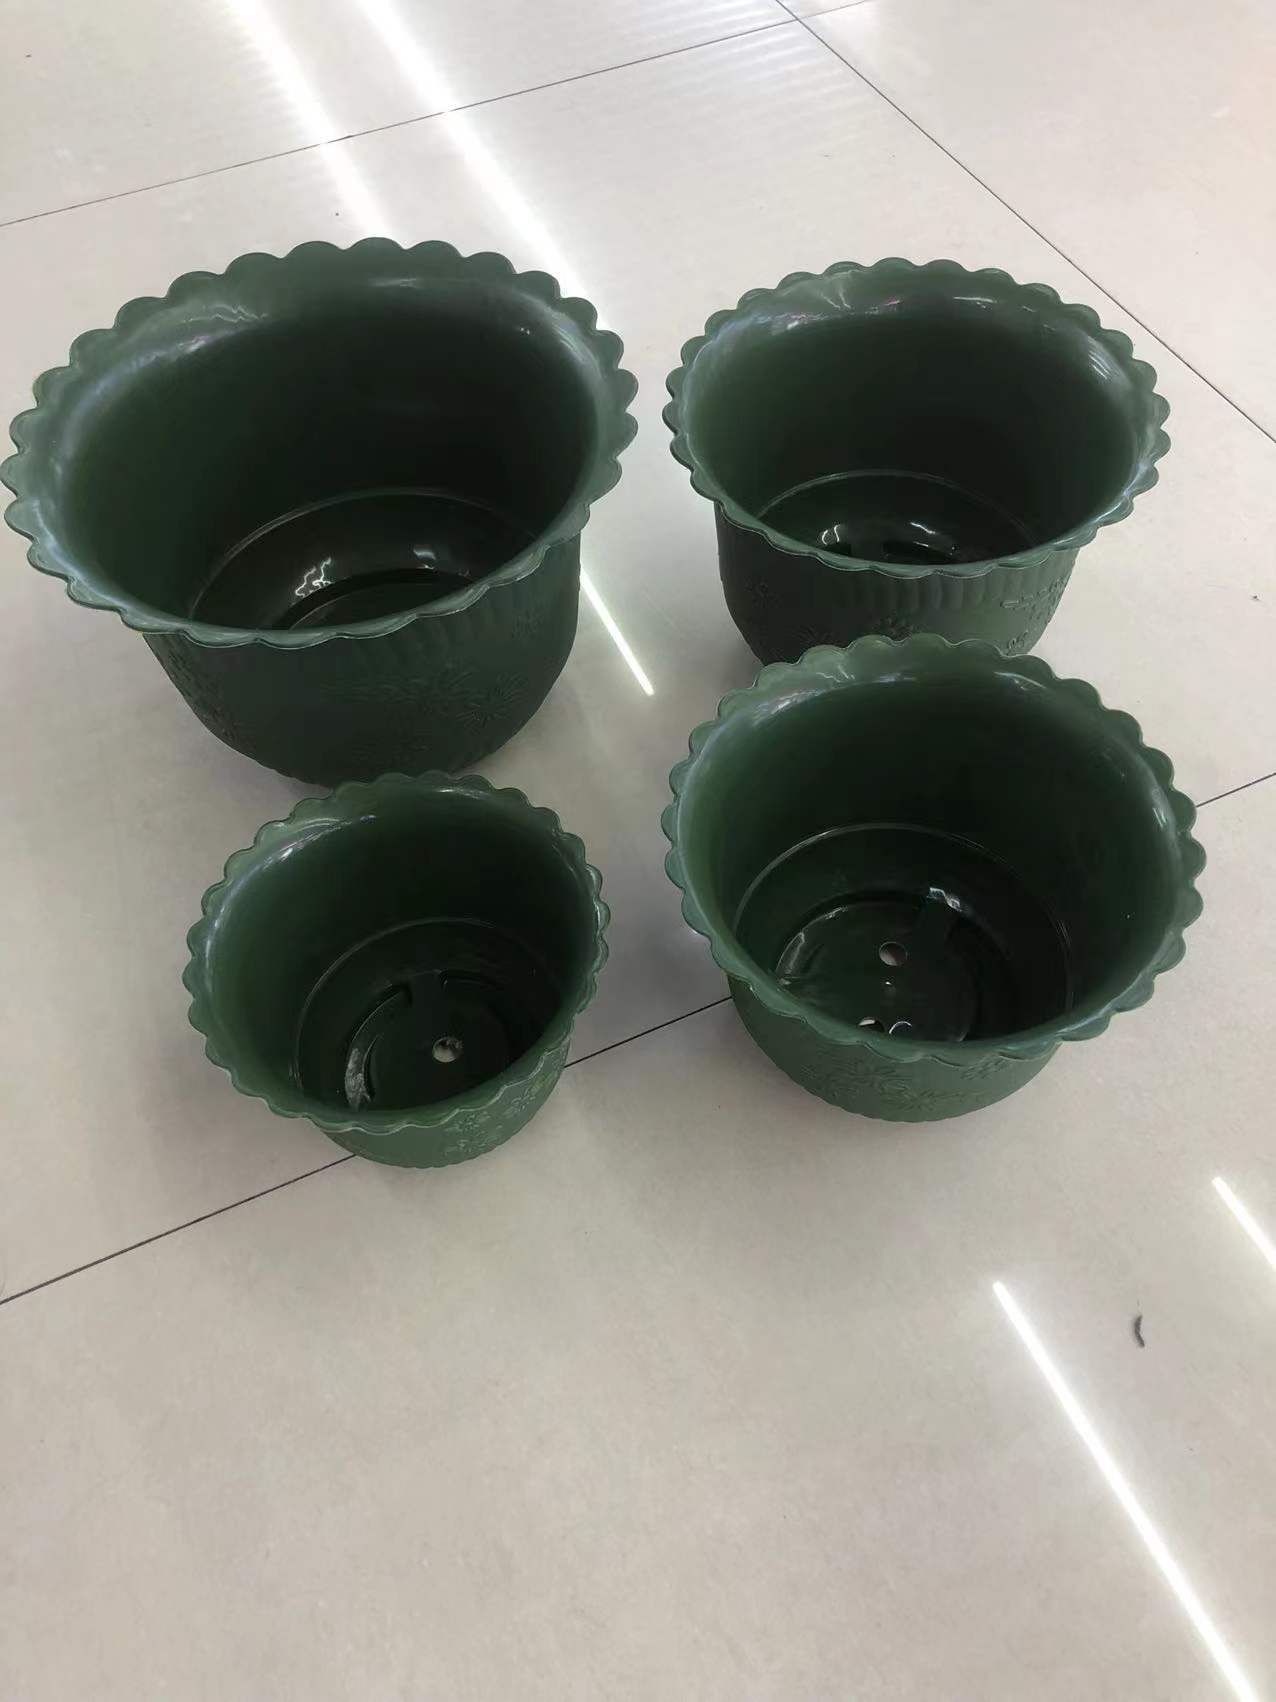 批发供应塑料花盆 仿陶瓷塑料花盆  3819-3816绿色花盆图